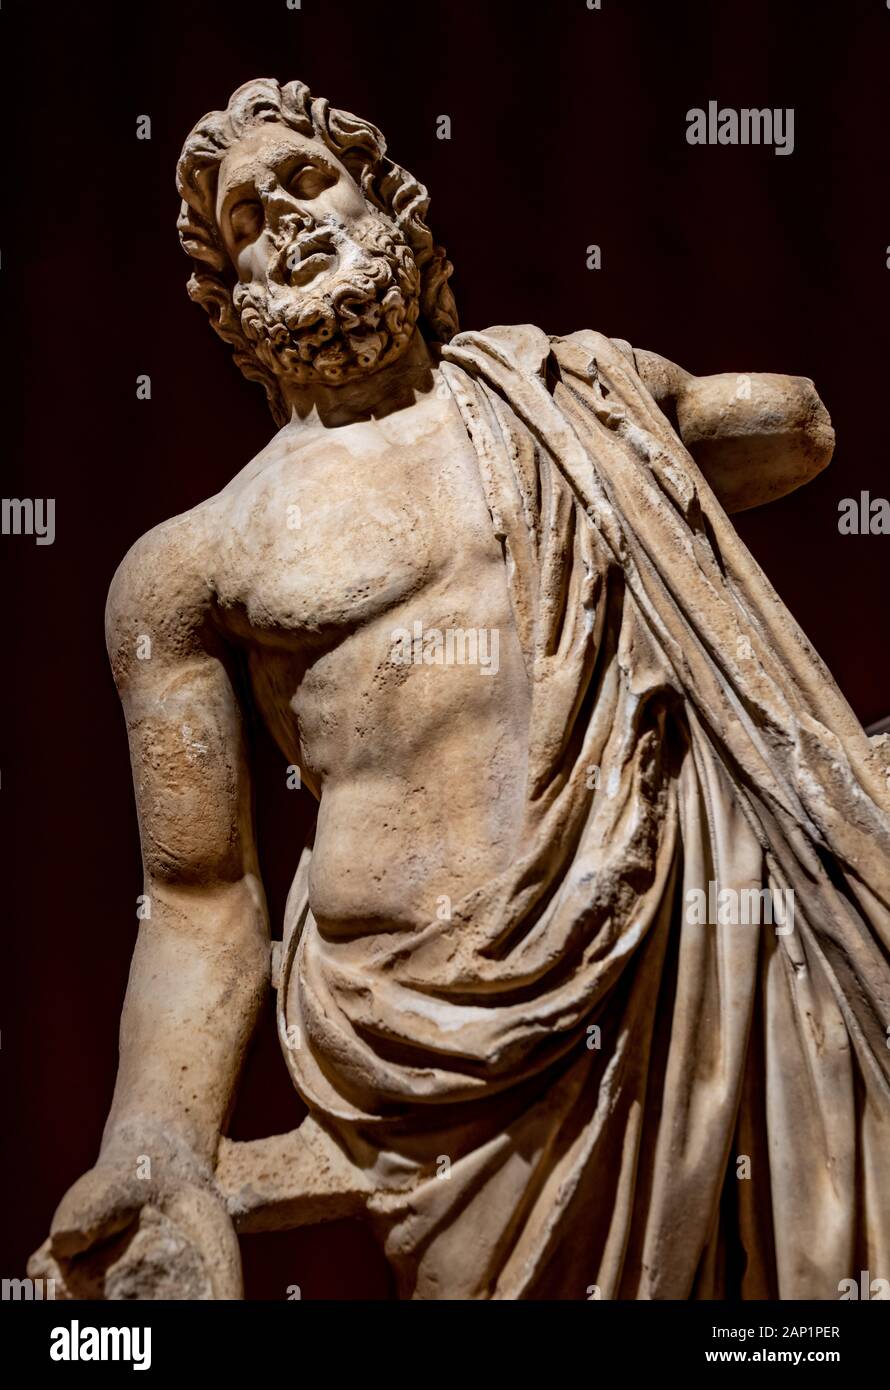 ANTALYA, TURQUIE - le 18 janvier 2020 : Zeus Statue en marbre. Musée Archéologique d'Antalya est l'un des plus grands musées de la Turquie situé dans la ville d'Antalya en Tur Banque D'Images